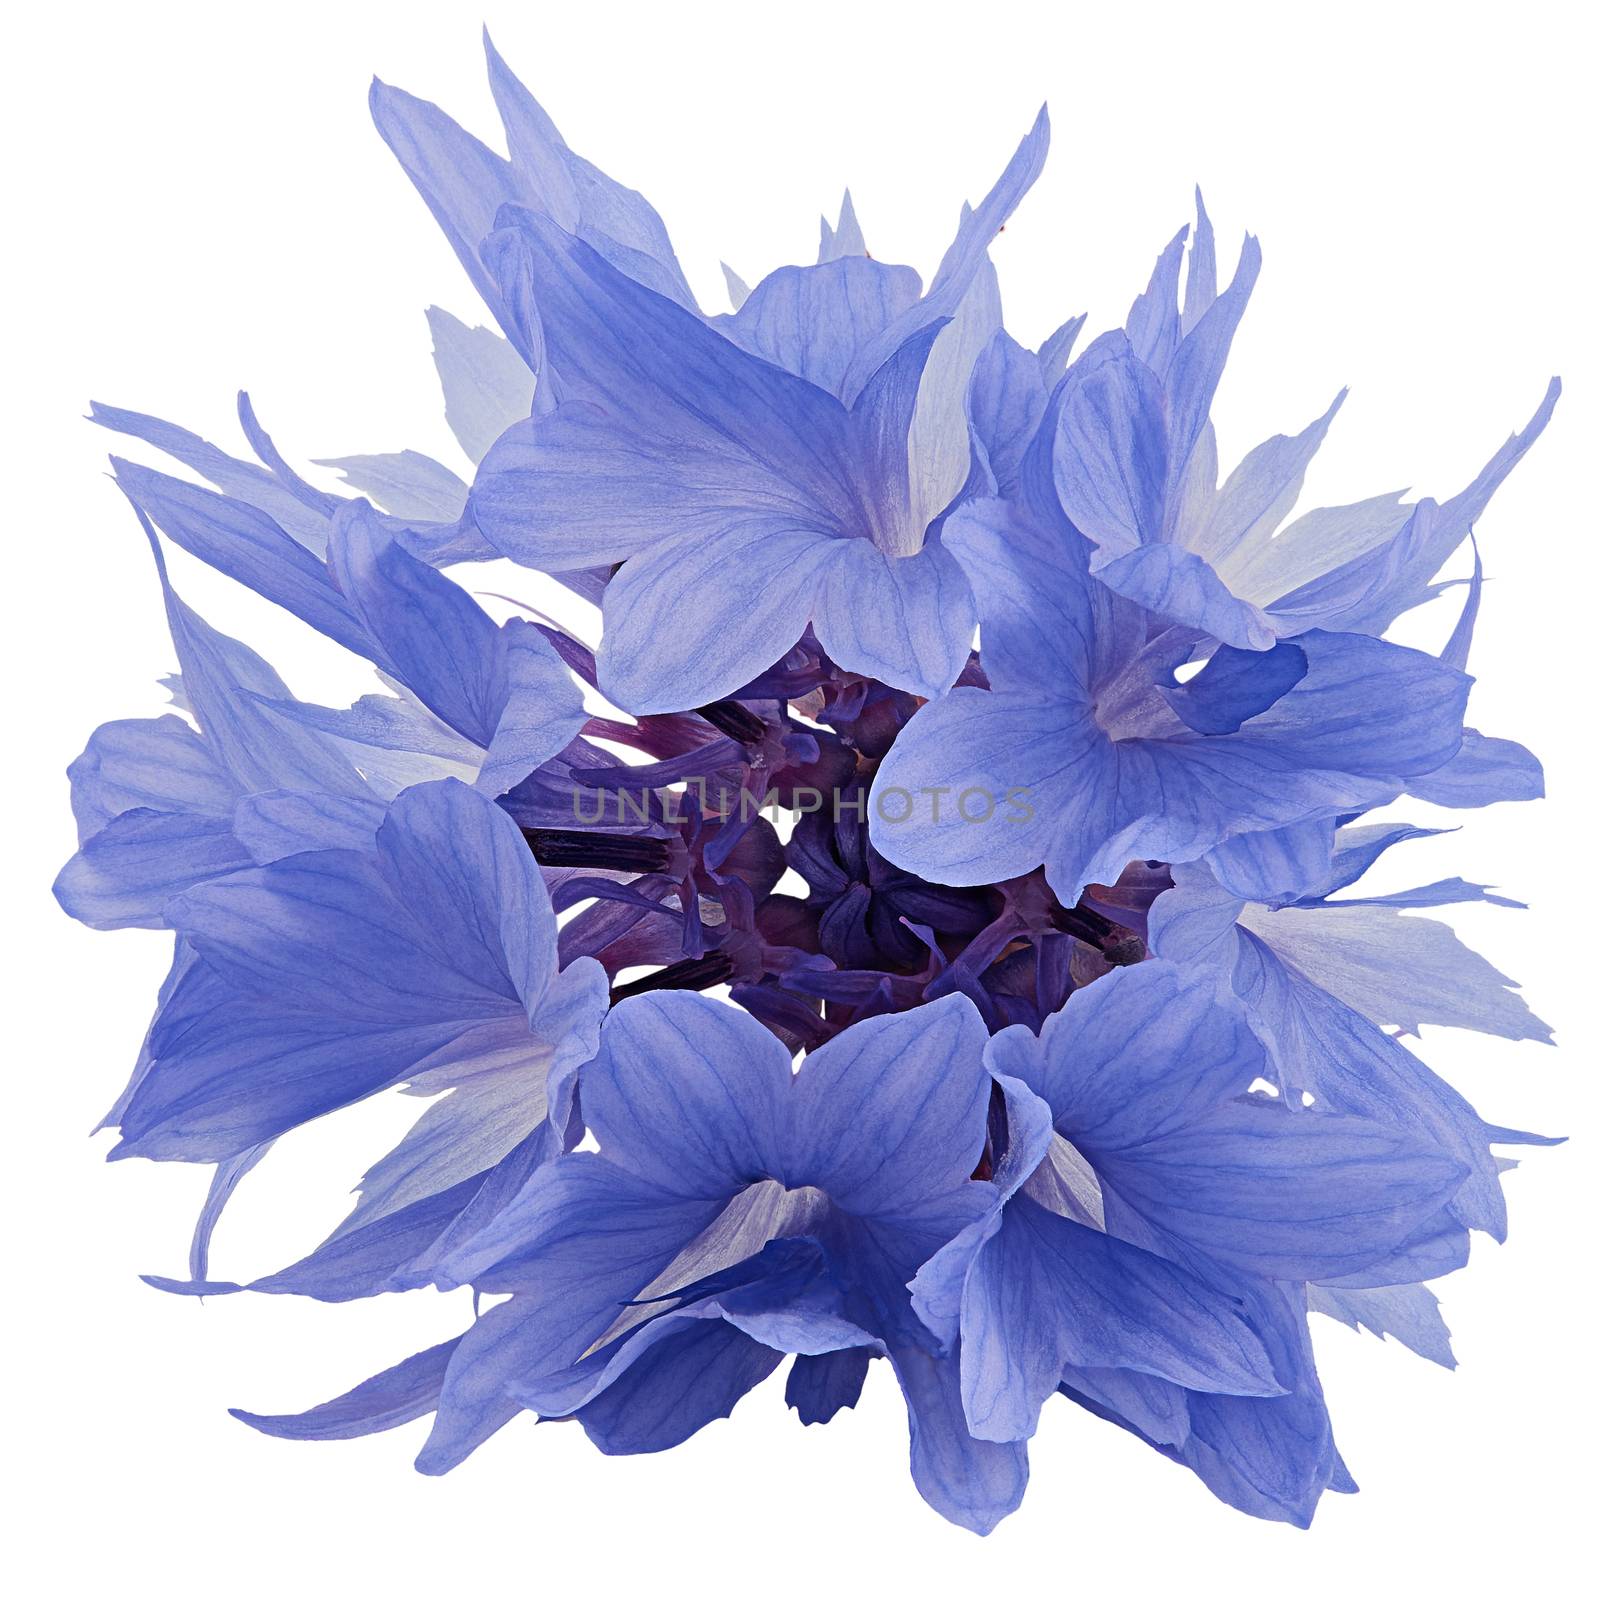 Blue cornflower  isolated on white background
